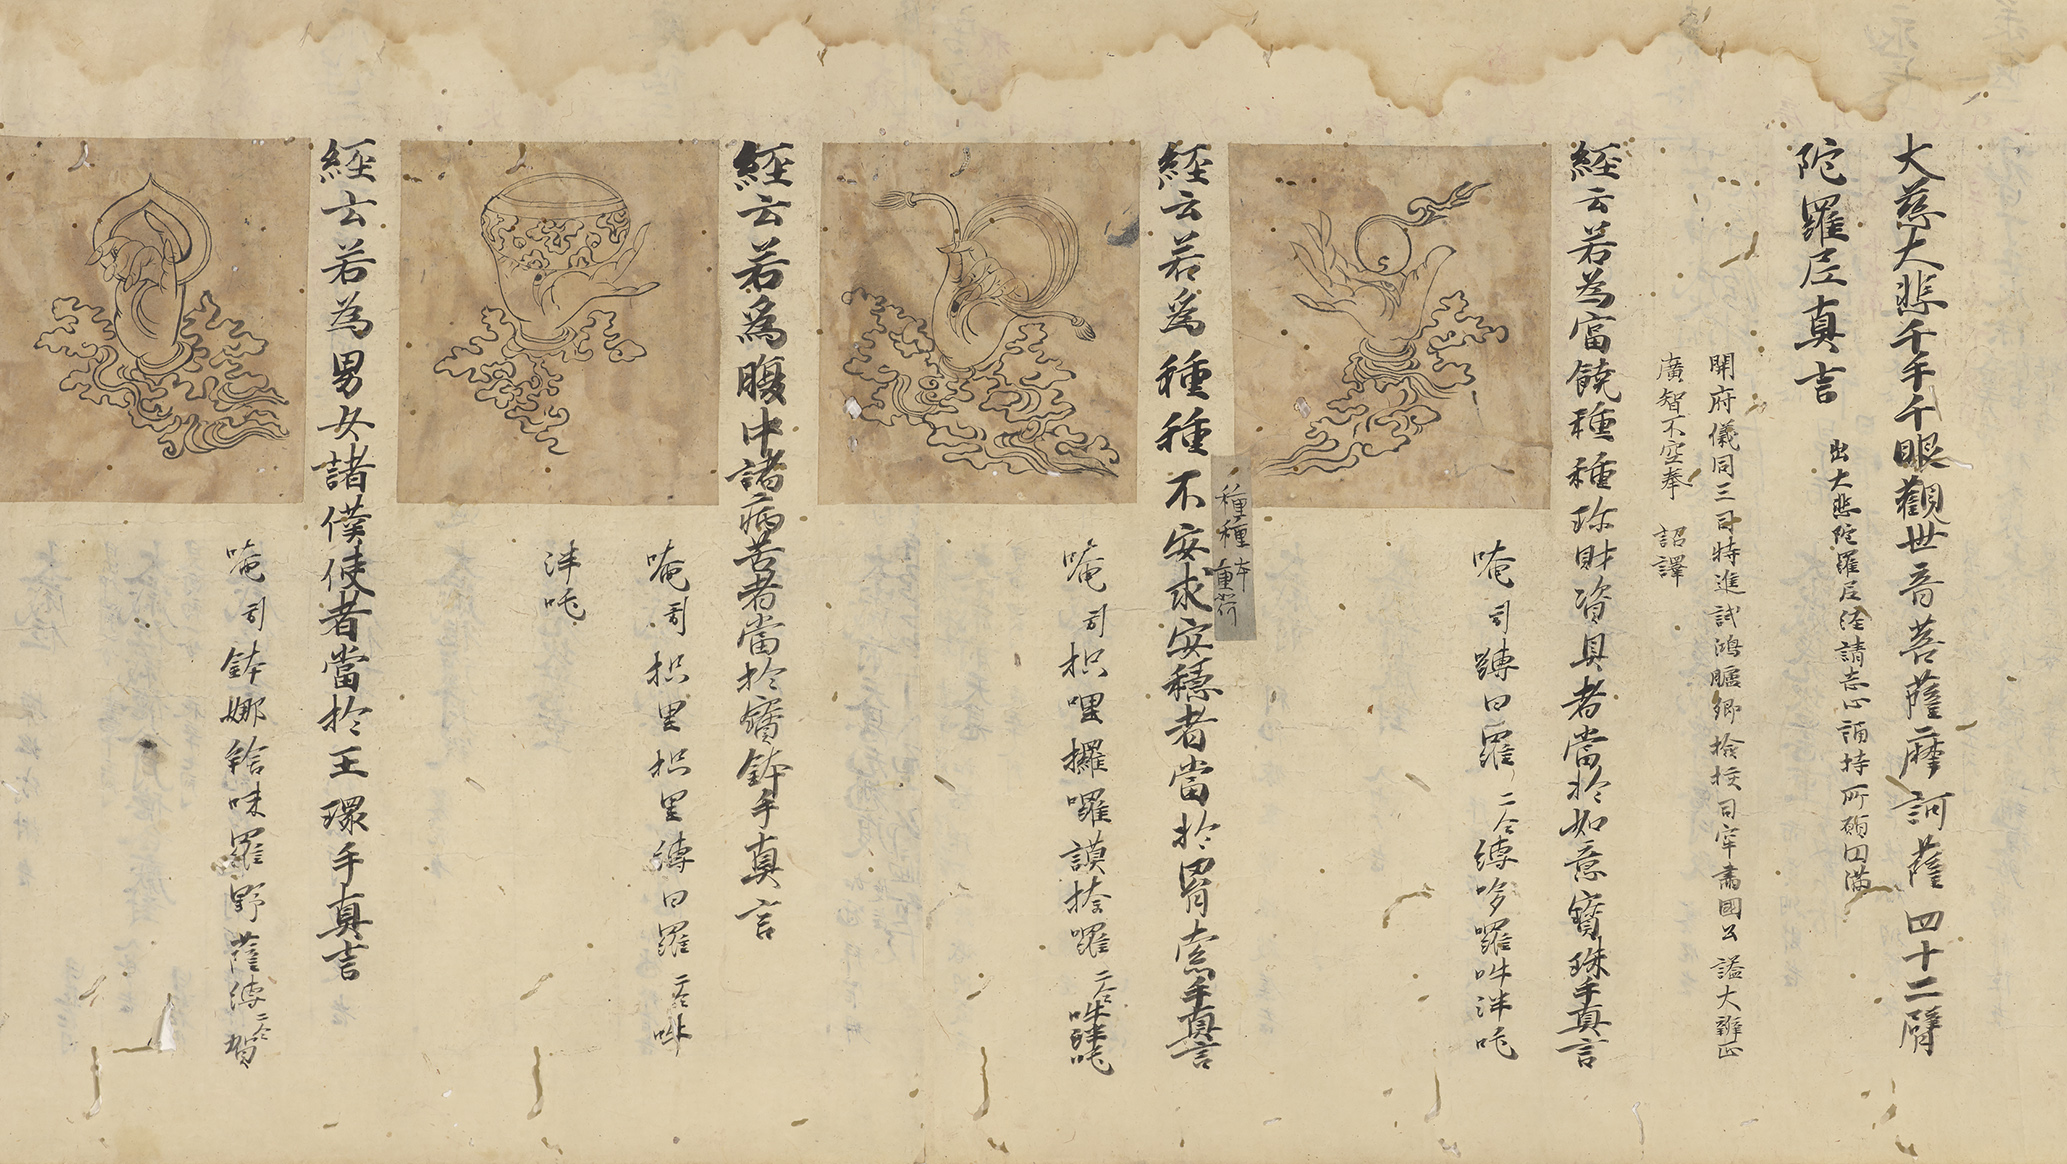 大悲心陀羅尼并四十二臂図像（部分）（京都国立博物館）